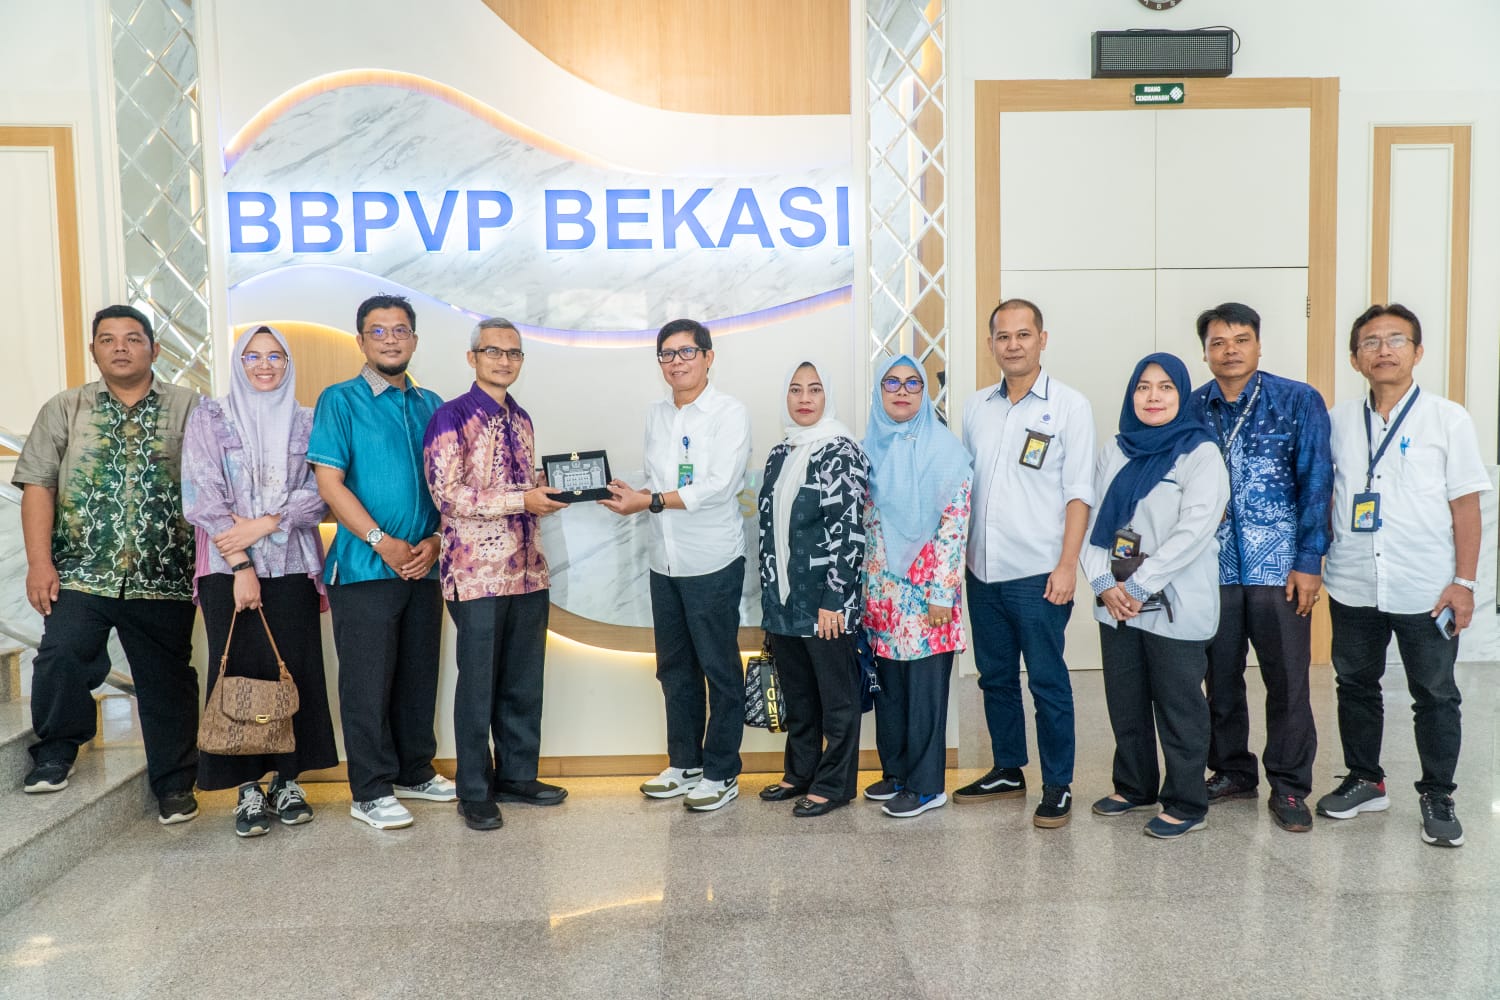 DPRD Banjarmasin Ingin Belajar dari BBPVP Bekasi